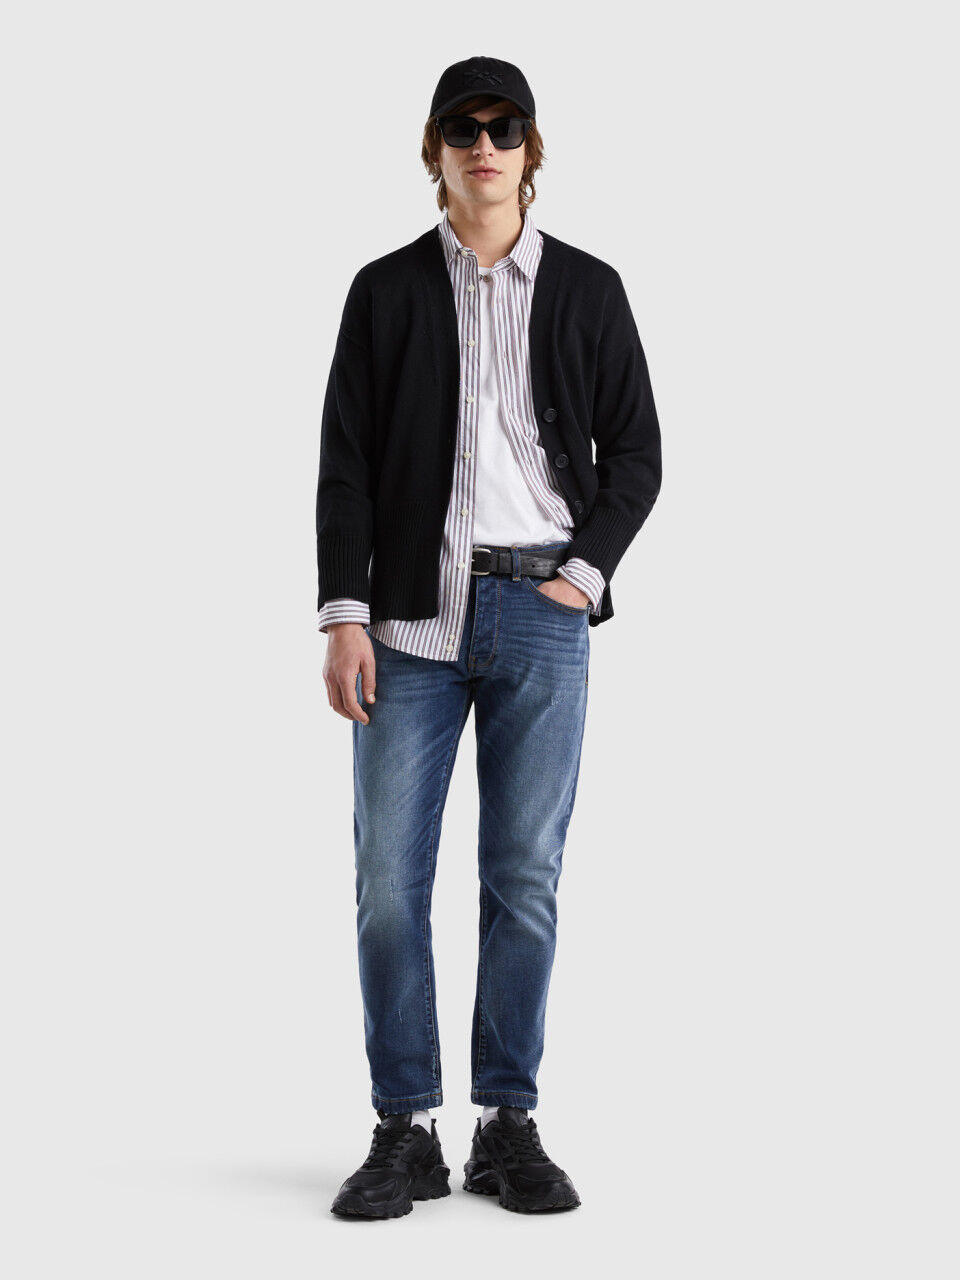 Five-pocket slim fit jeans